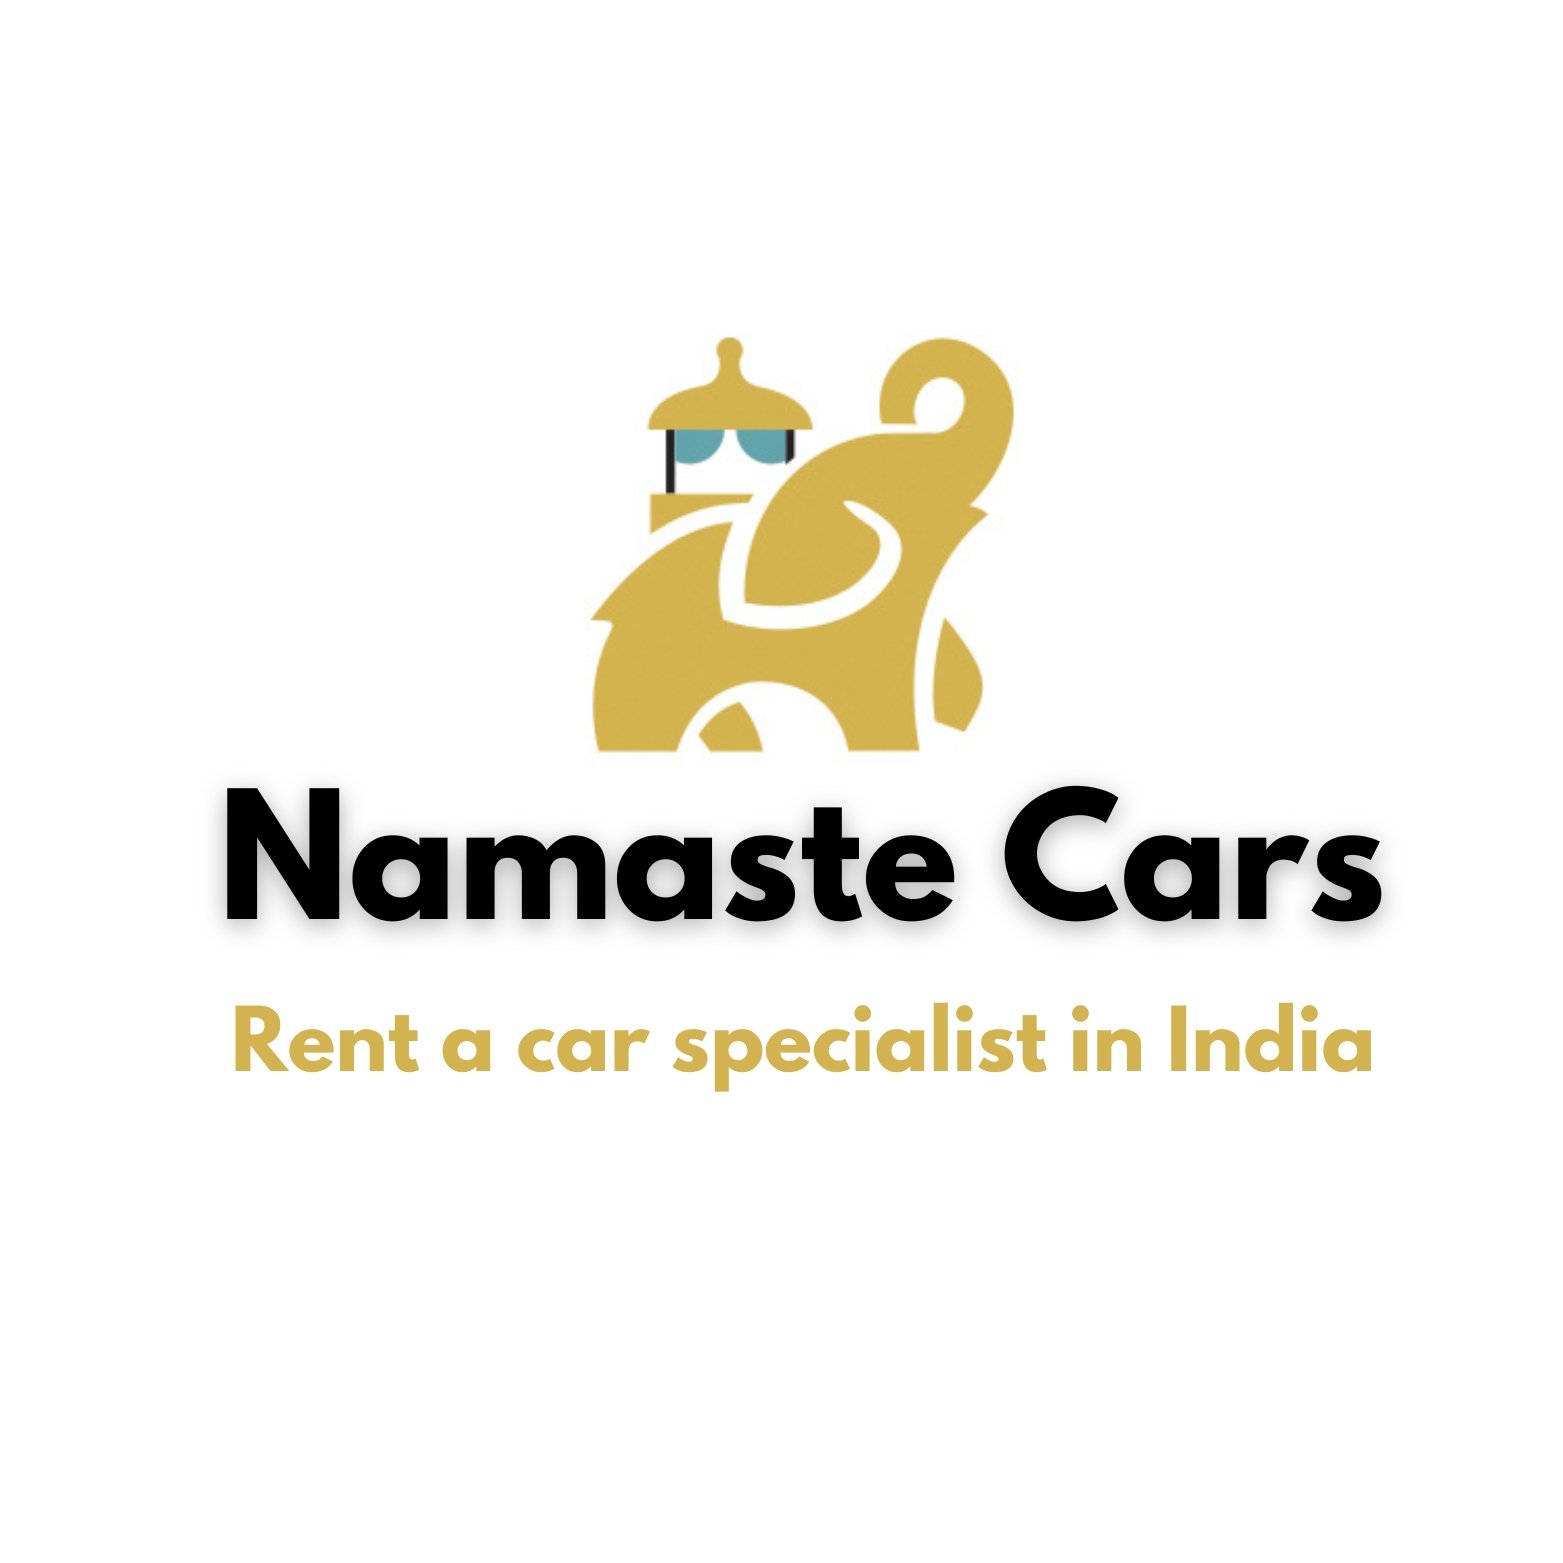 Namaste cars